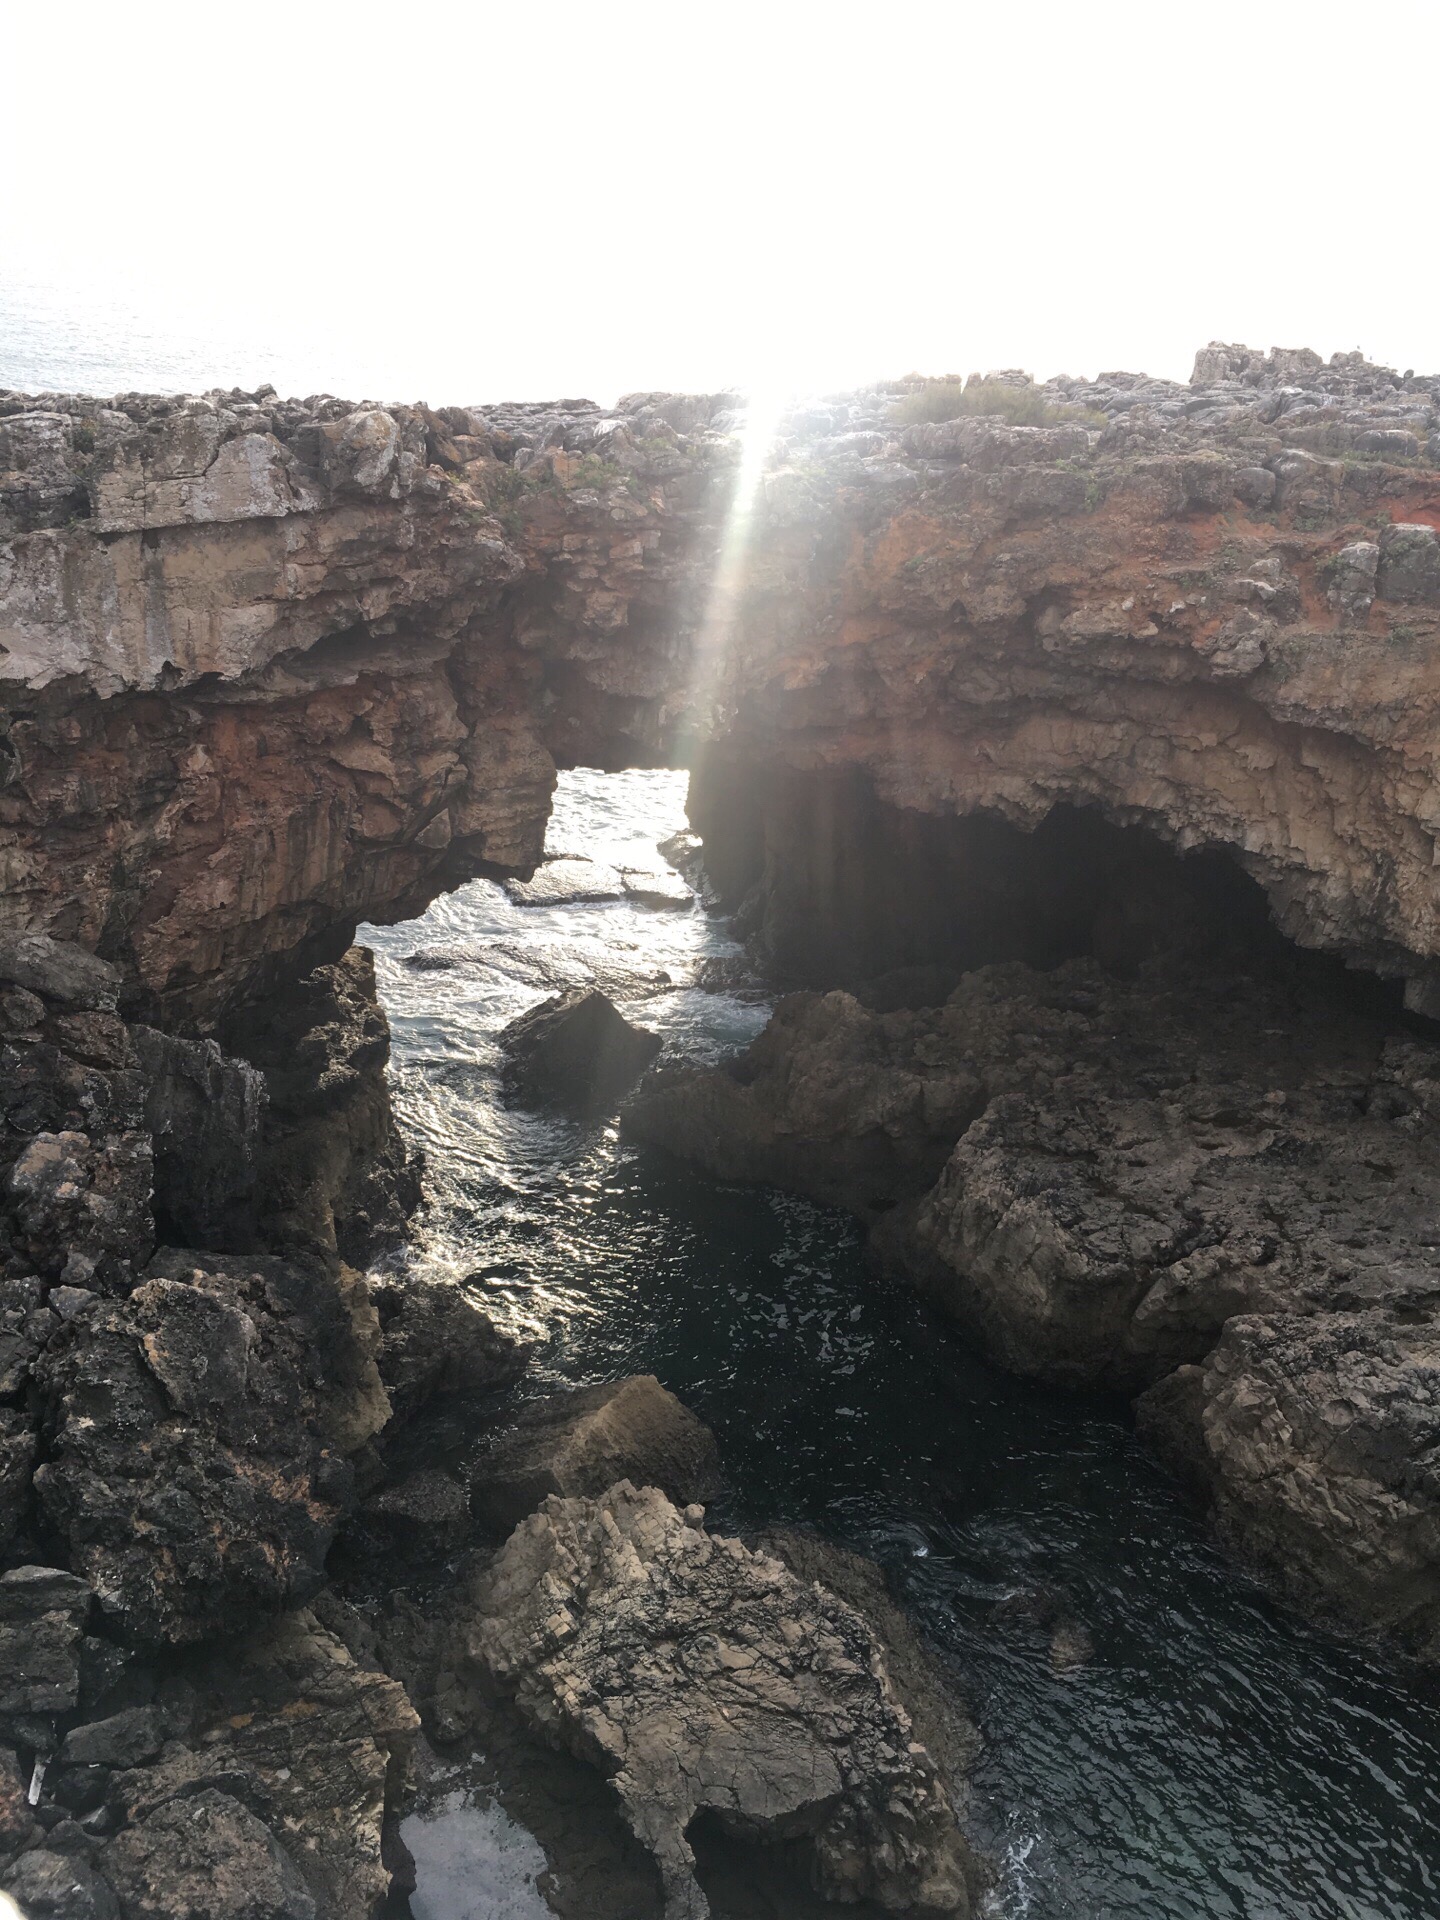 地狱之口，位于罗卡角十分钟车程之处，因海水的侵蚀形成个空洞，海水通过之处拍击岩石，发出巨大声响。 此